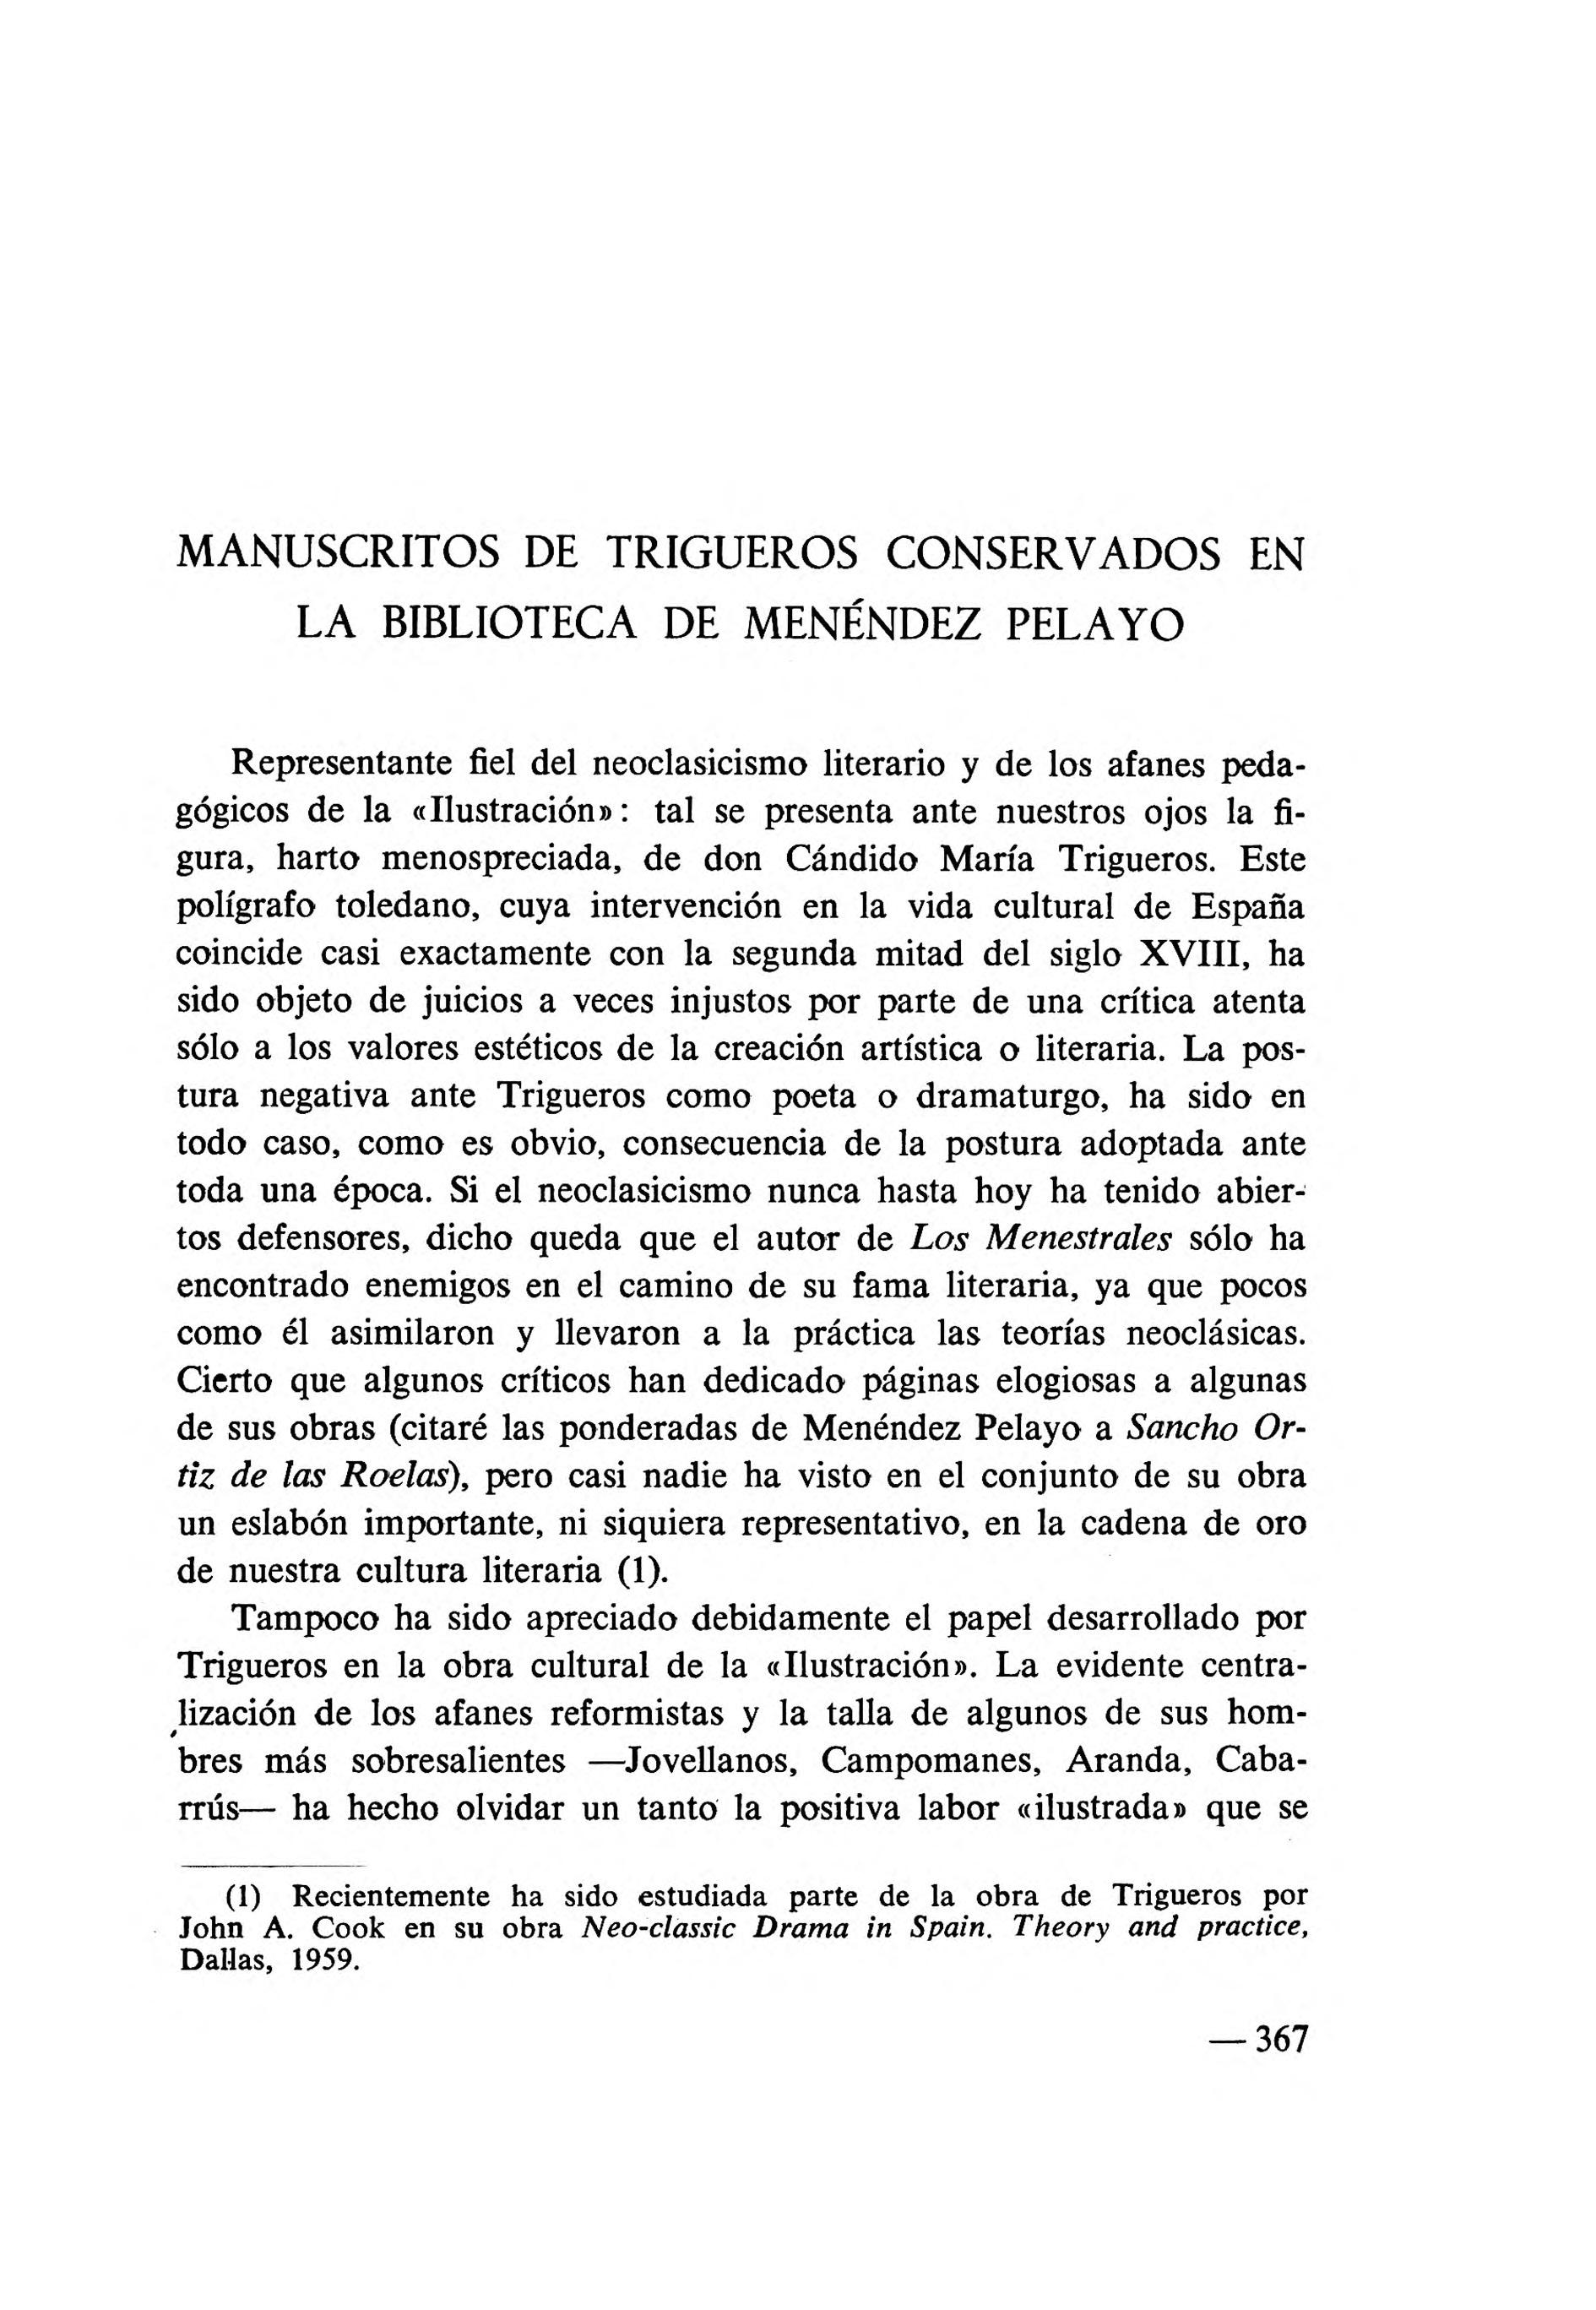 Manuscritos de Trigueros conservados en la Biblioteca de Menéndez Pelayo / Francisco Aguilar Piñal | Biblioteca Virtual Miguel de Cervantes